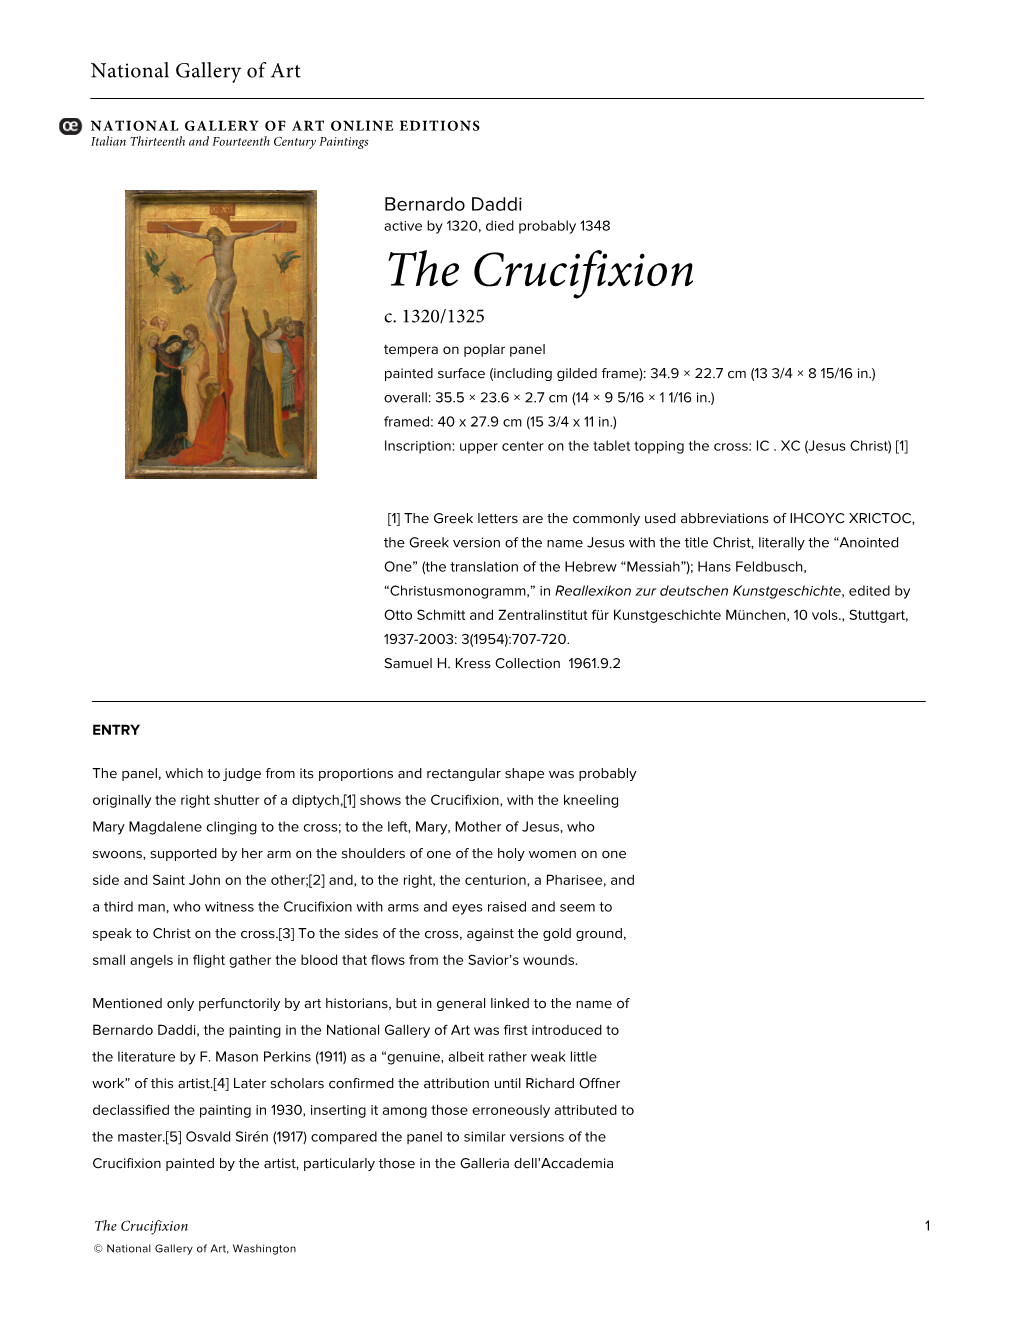 The Crucifixion C